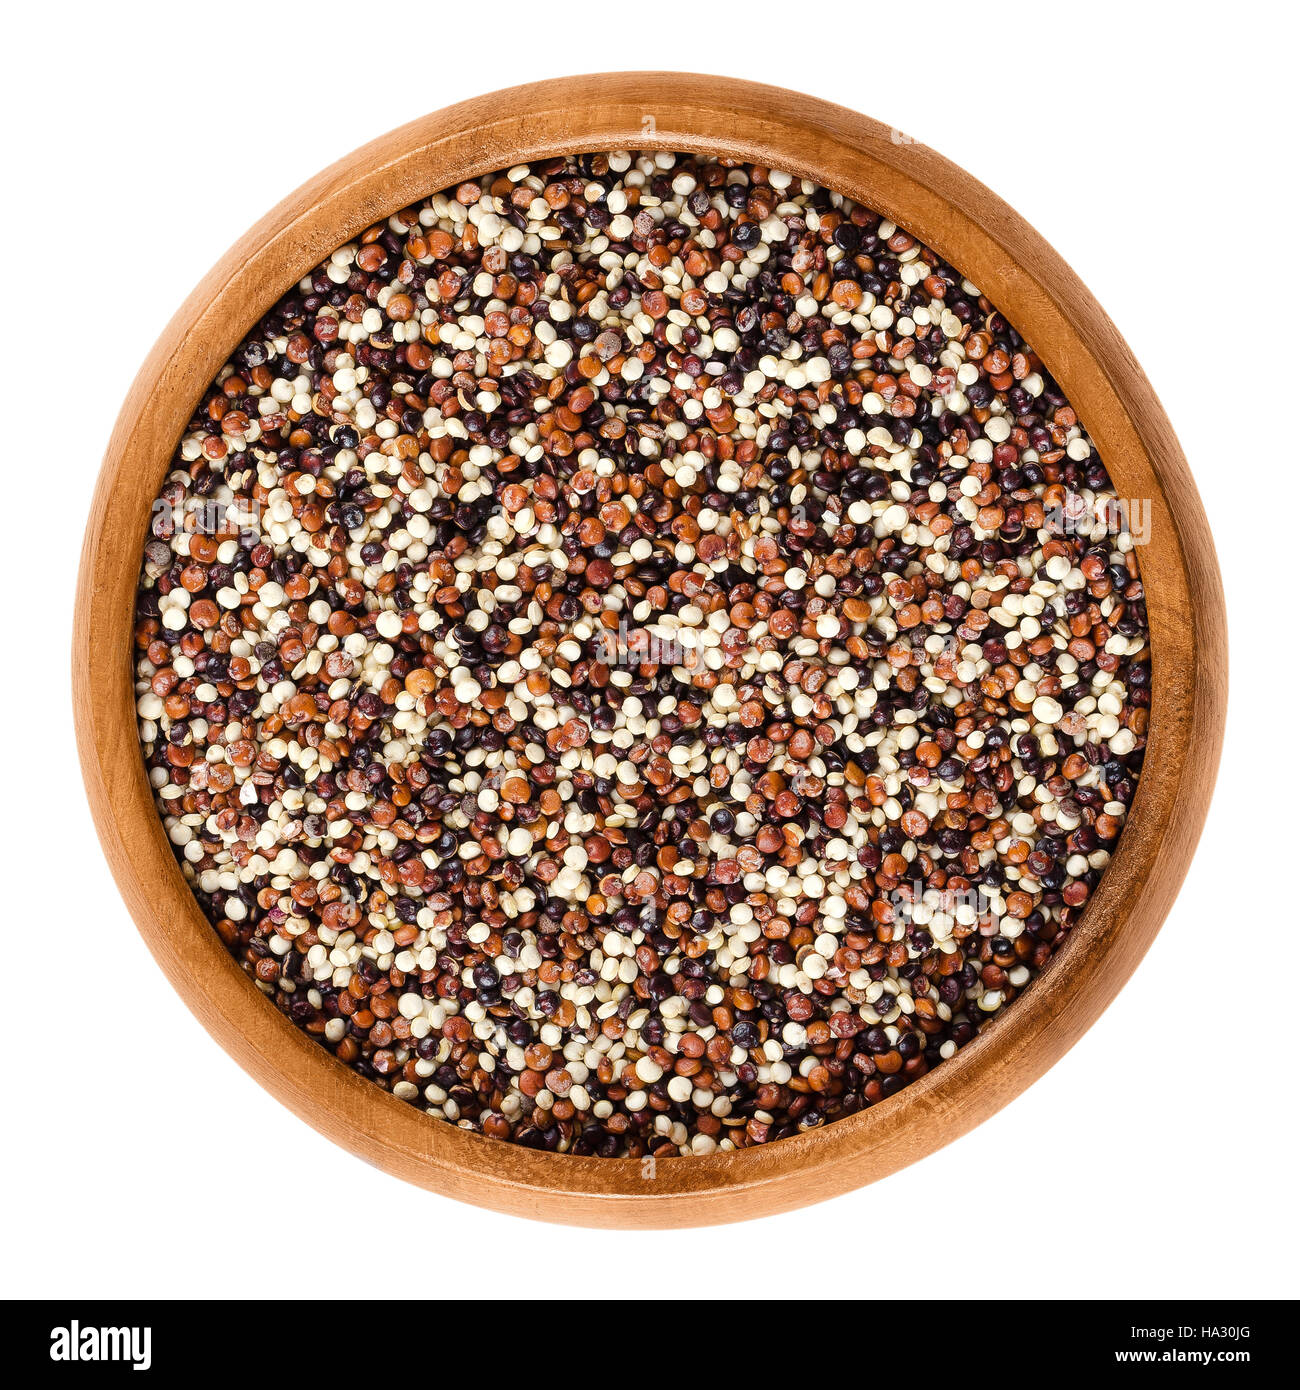 Les graines de quinoa mixtes dans bol en bois. Jaune, rouge et noir des fruits comestibles de récolte du grain dans le Chenopodium quinoa Amarante famille. Banque D'Images